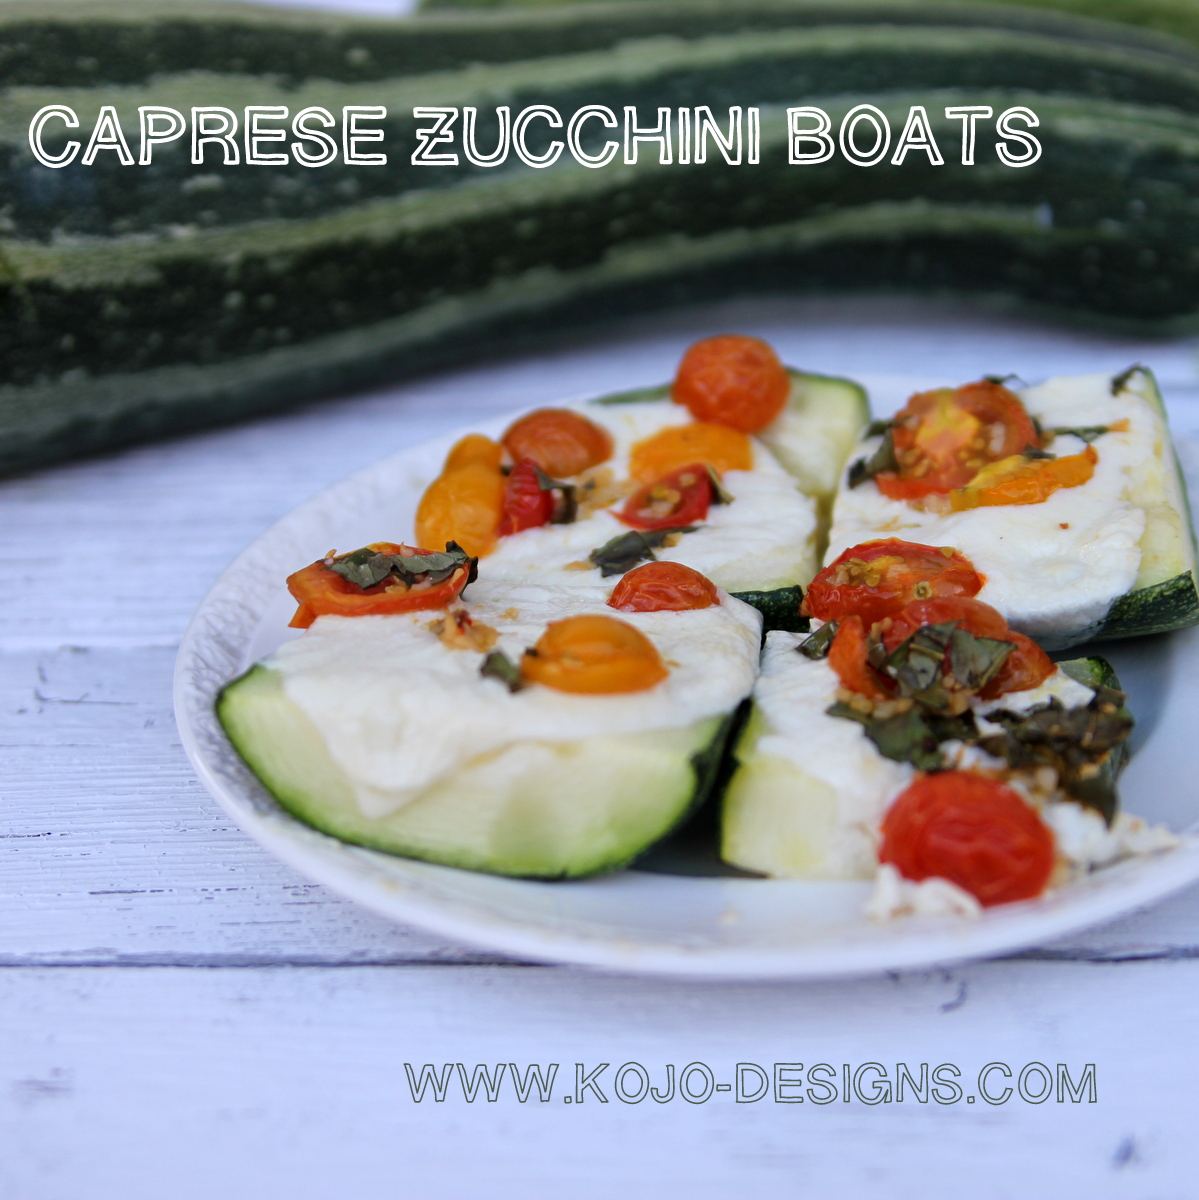 caprese zucchini boat recipe